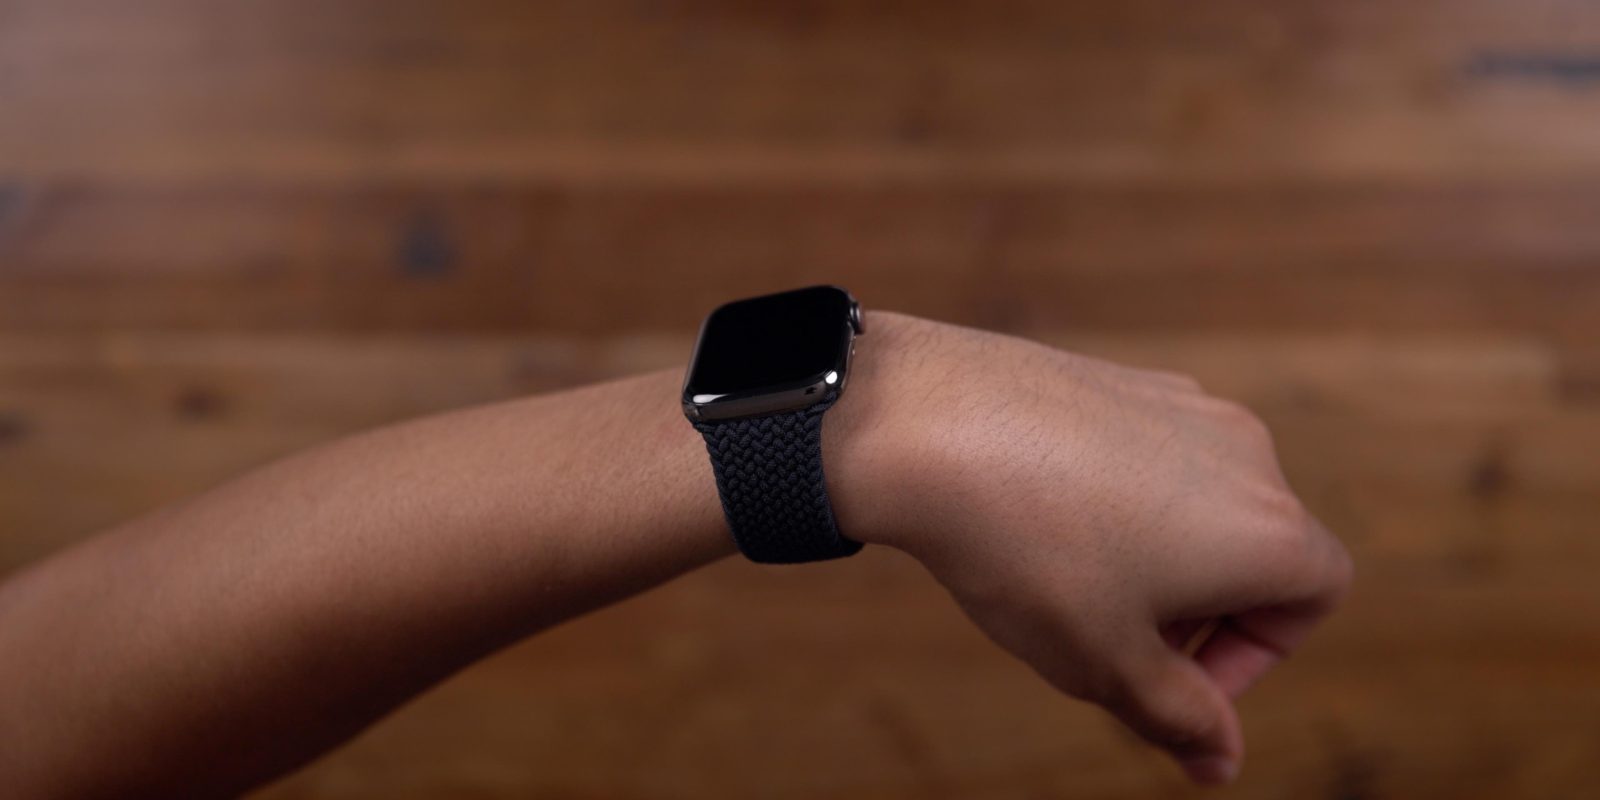 Apple Watch blank screen